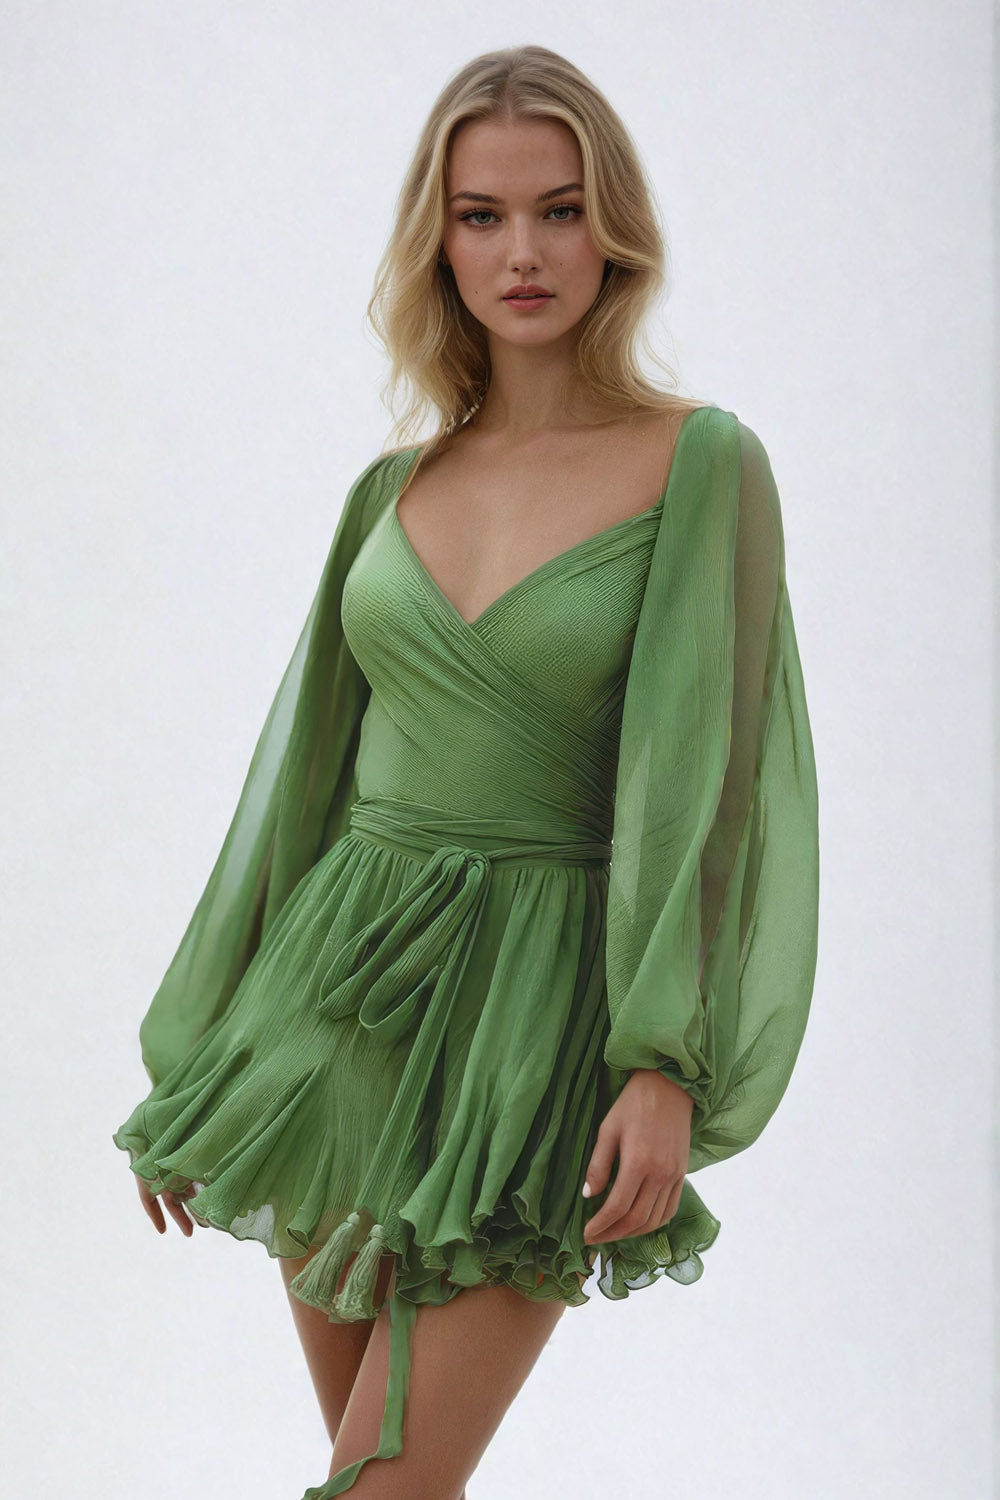 Stylish Lace-Up Mini Dress - Green